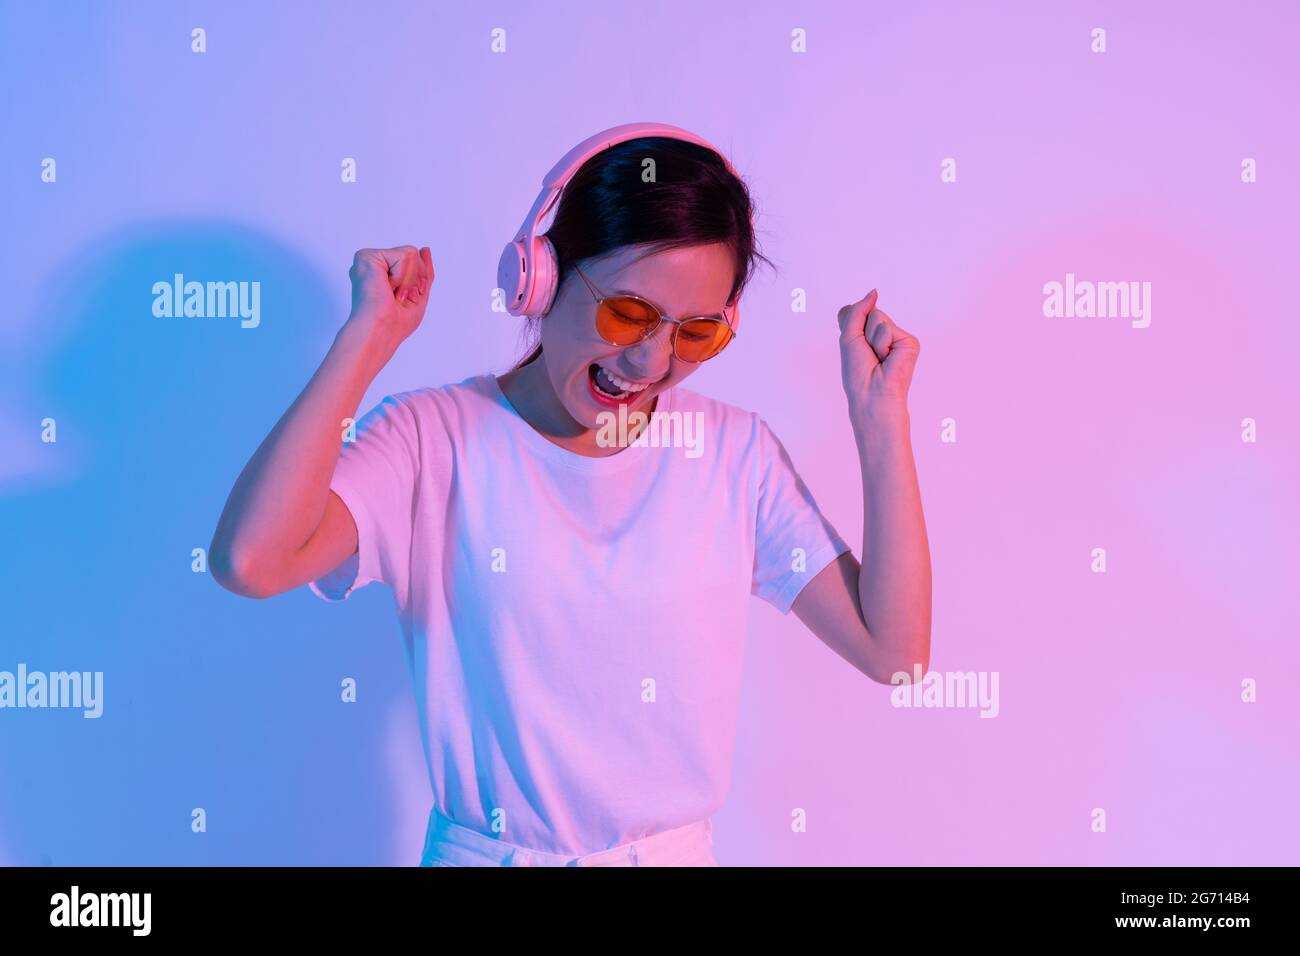 Portrait eines jungen asiatischen Mädchens, das Kopfhörer trägt Stockfoto